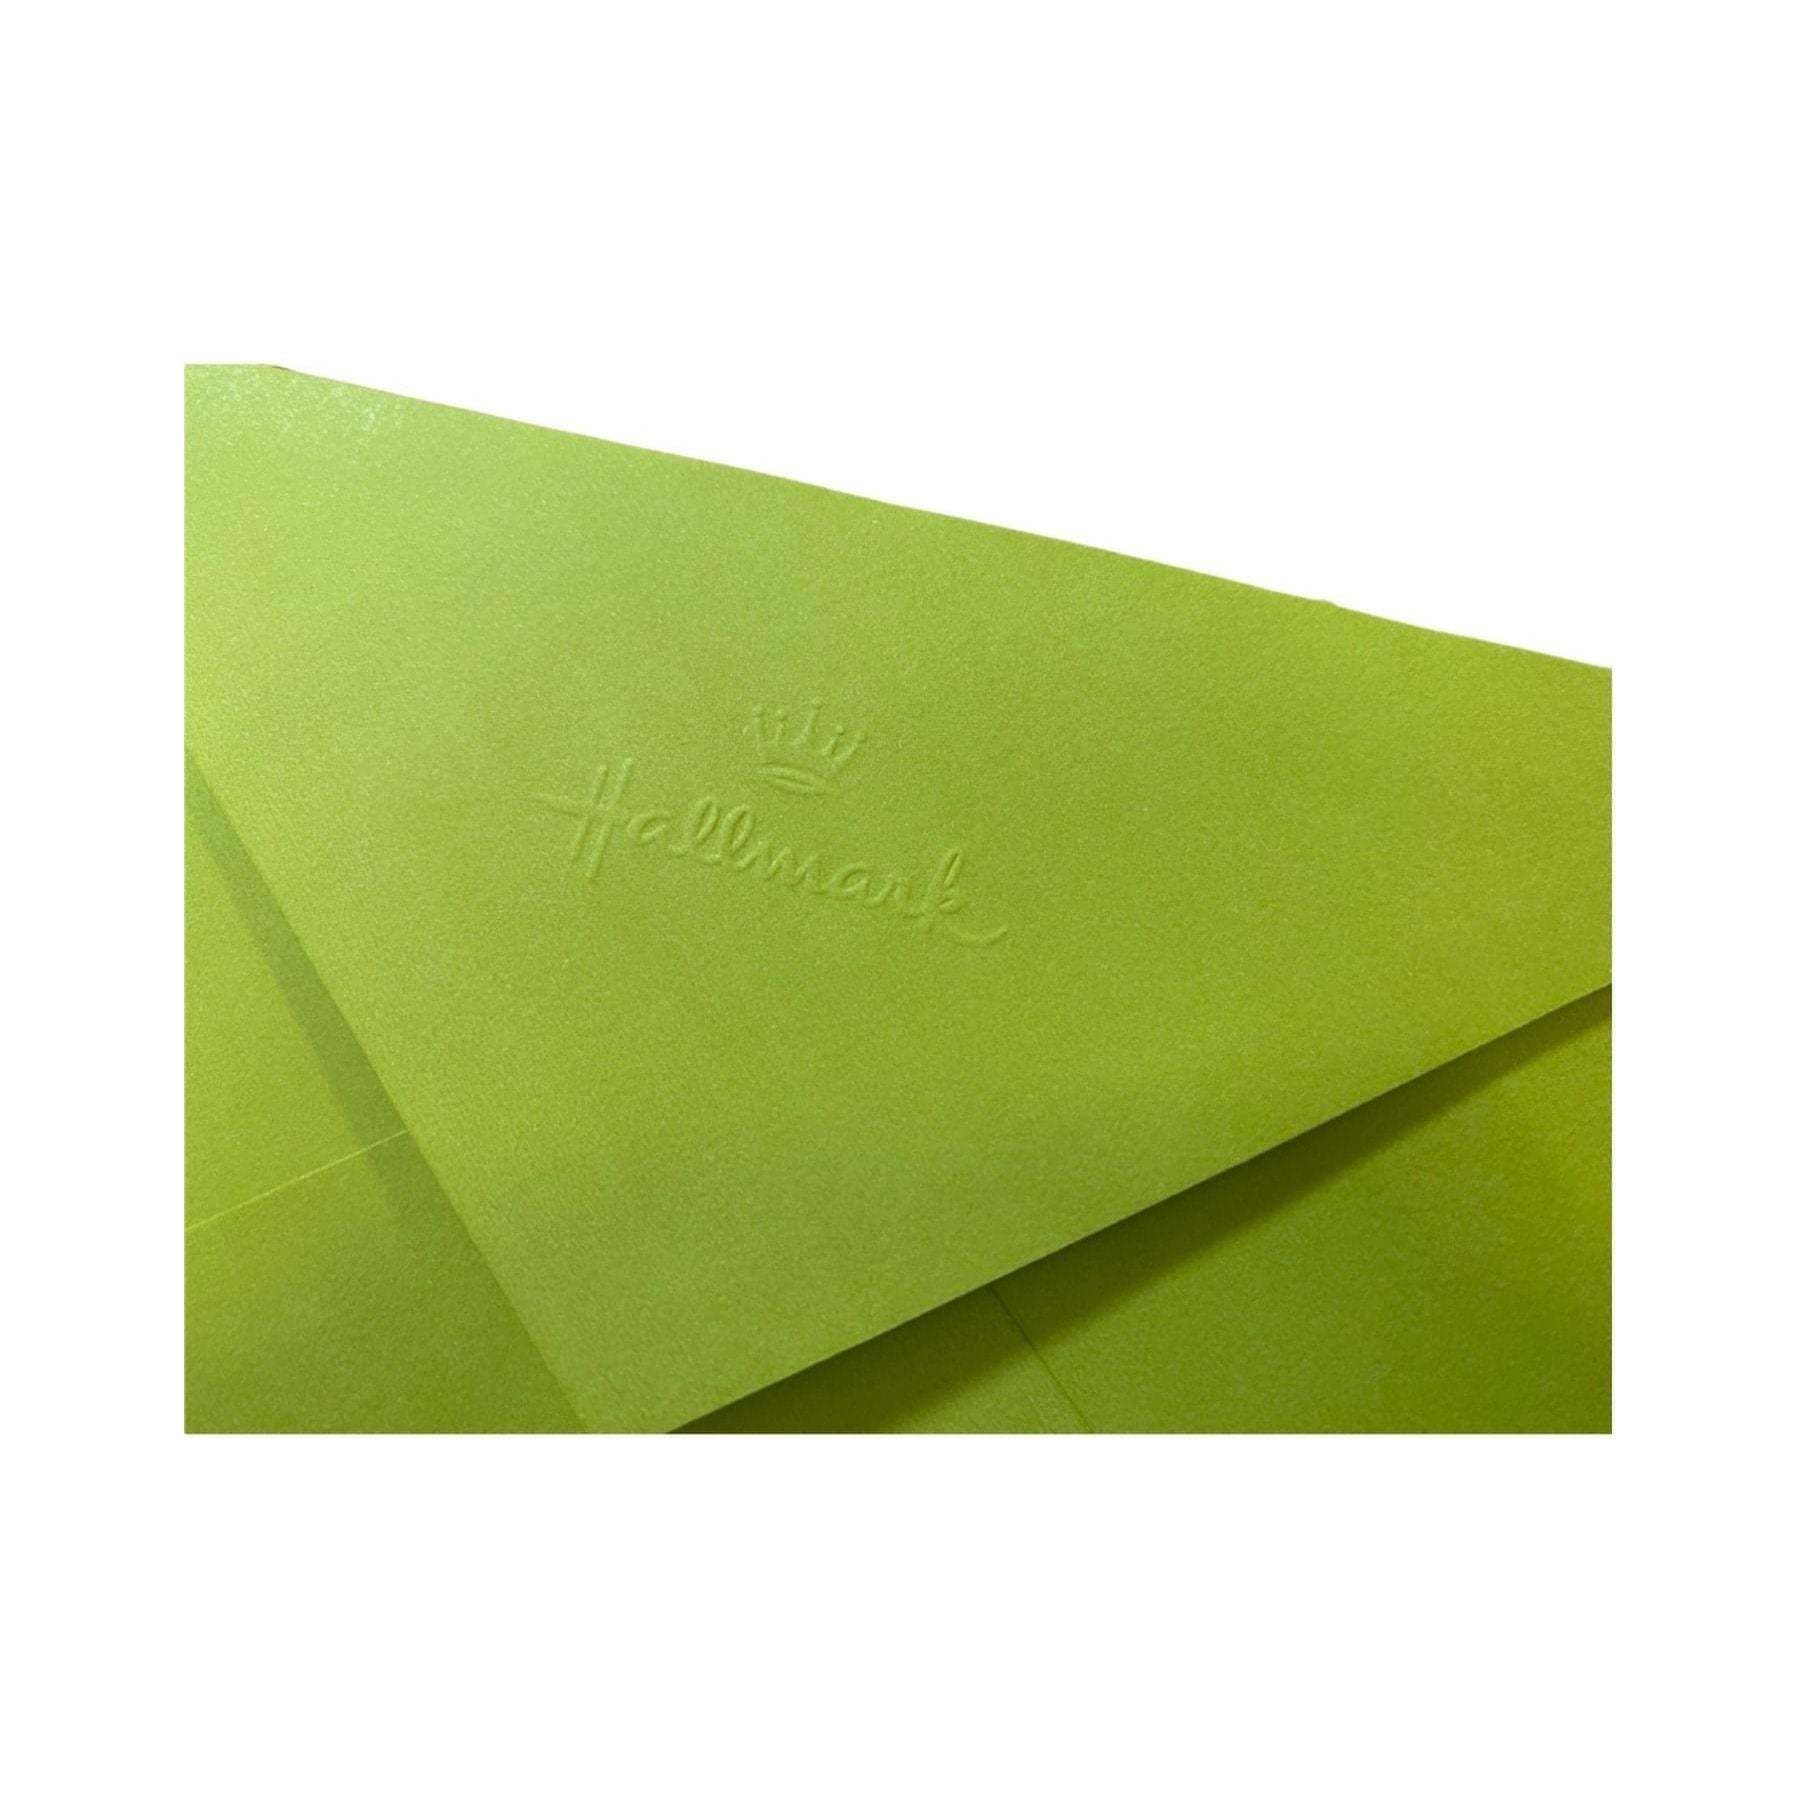 Hallmark-Birthday Card with Envelope - Heartline by Hallmark - "Women Don't Fart!" - Brandat Outlet